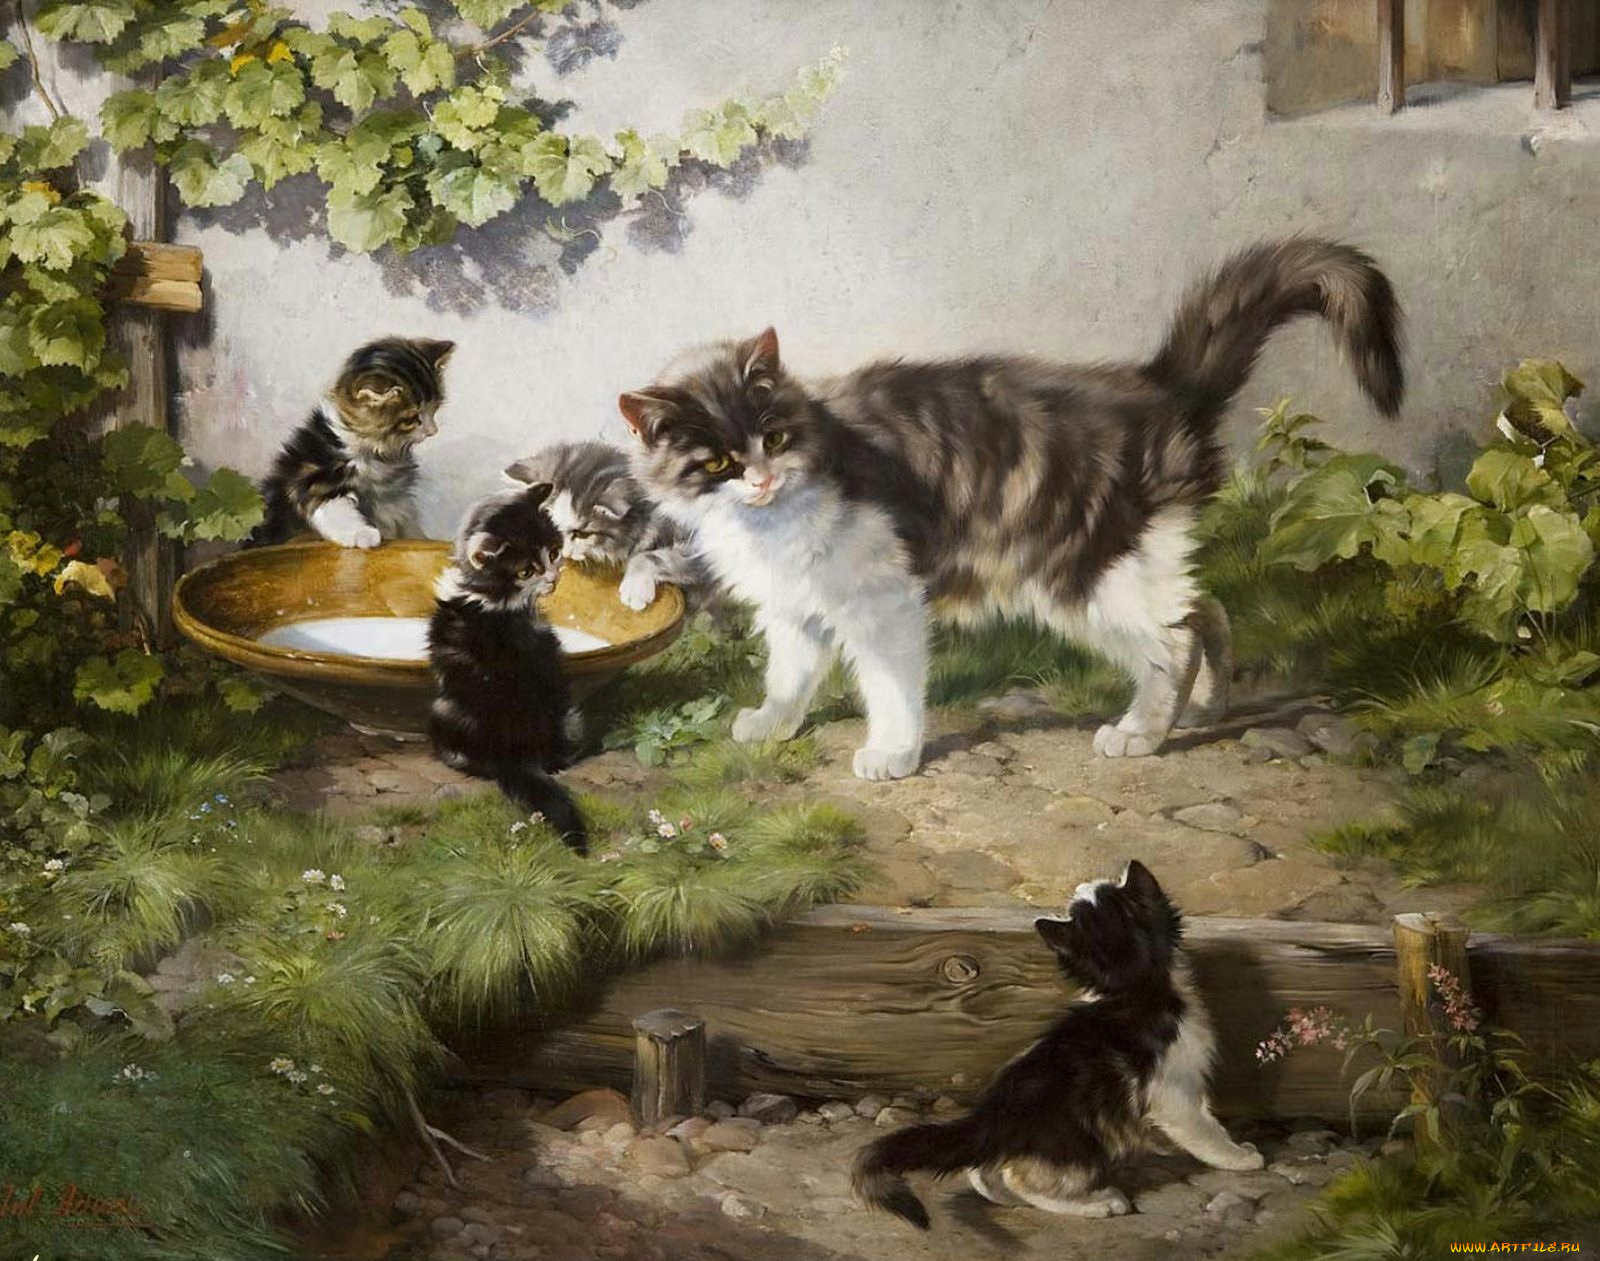 Рассказ по картине кошка с котятами. Джулиус Адамс художник.